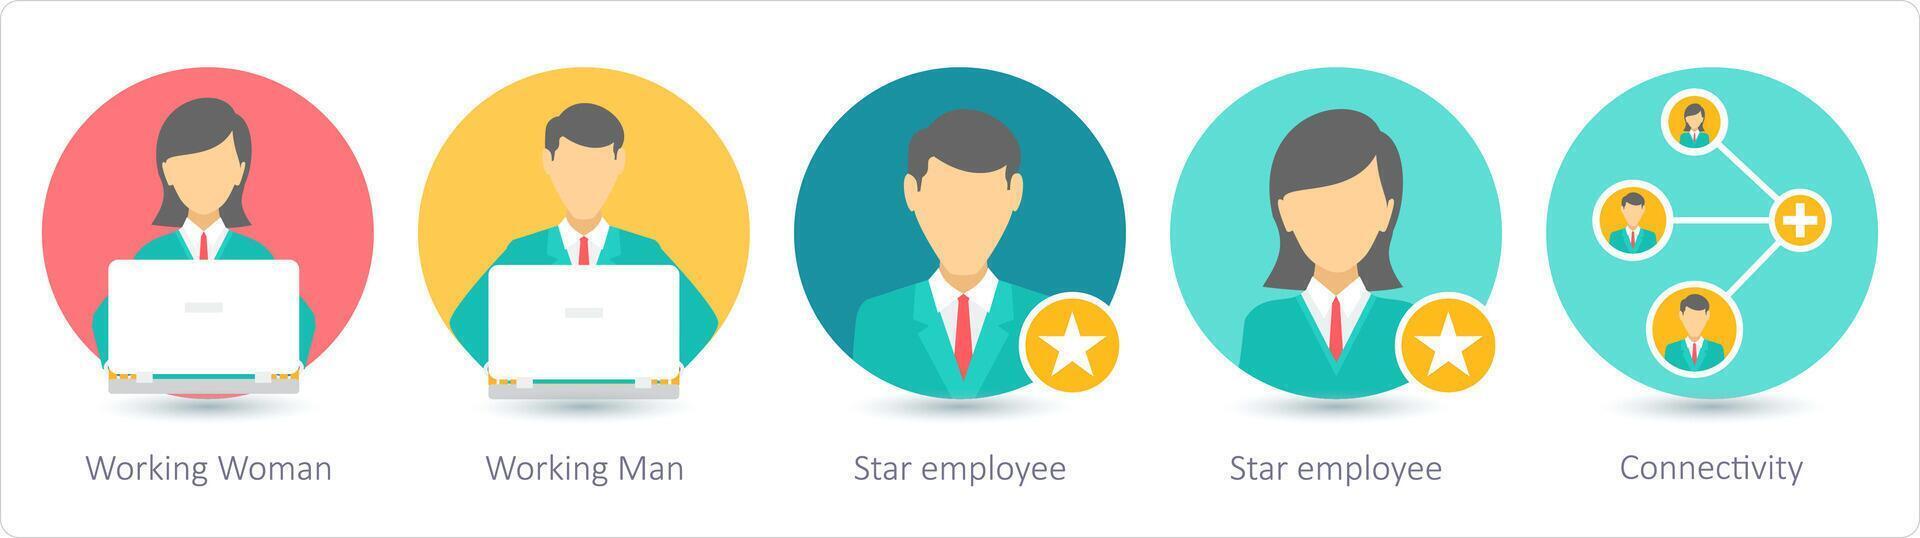 en uppsättning av 5 företag ikoner som arbetssätt kvinna, arbetssätt man, stjärna anställd vektor